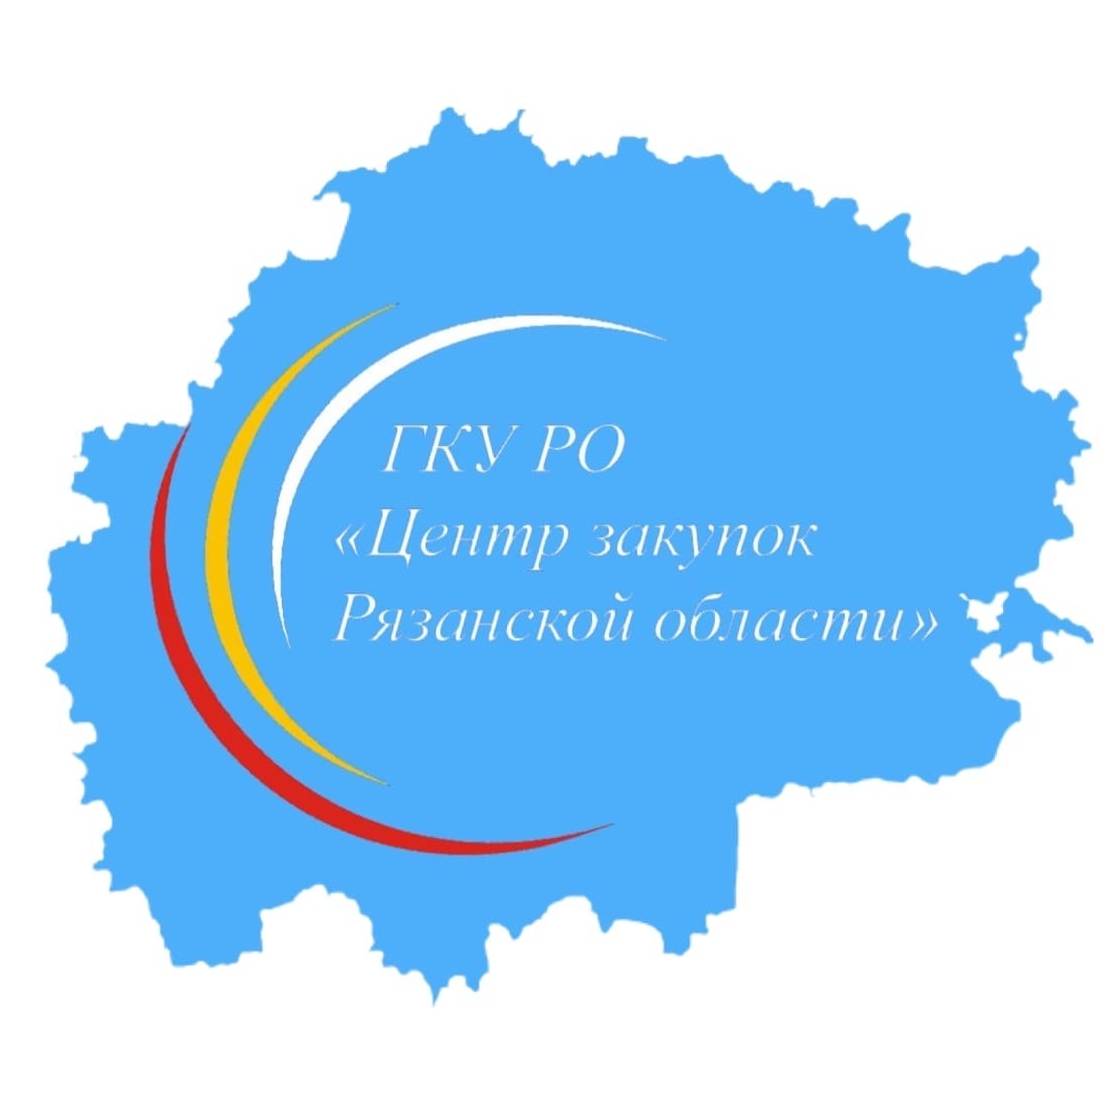 Иконка канала ГКУ РО «Центр закупок Рязанской области»